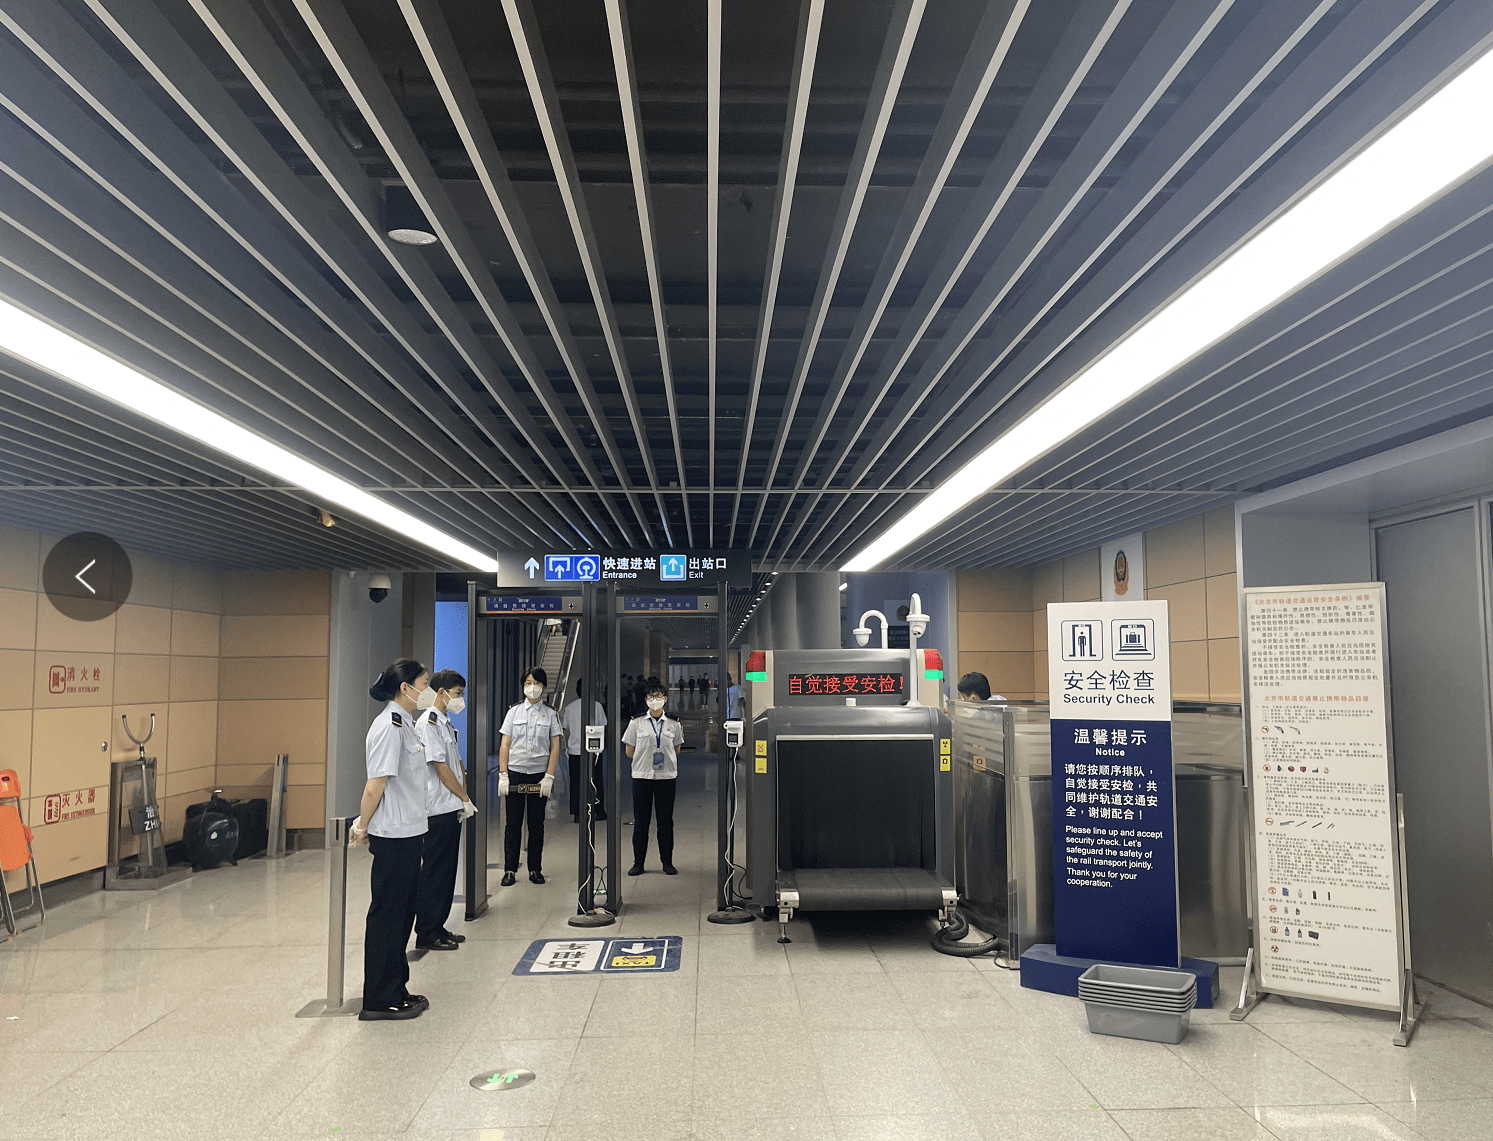 北京丰台站一票安检铁路旅客换乘地铁无须二次安检